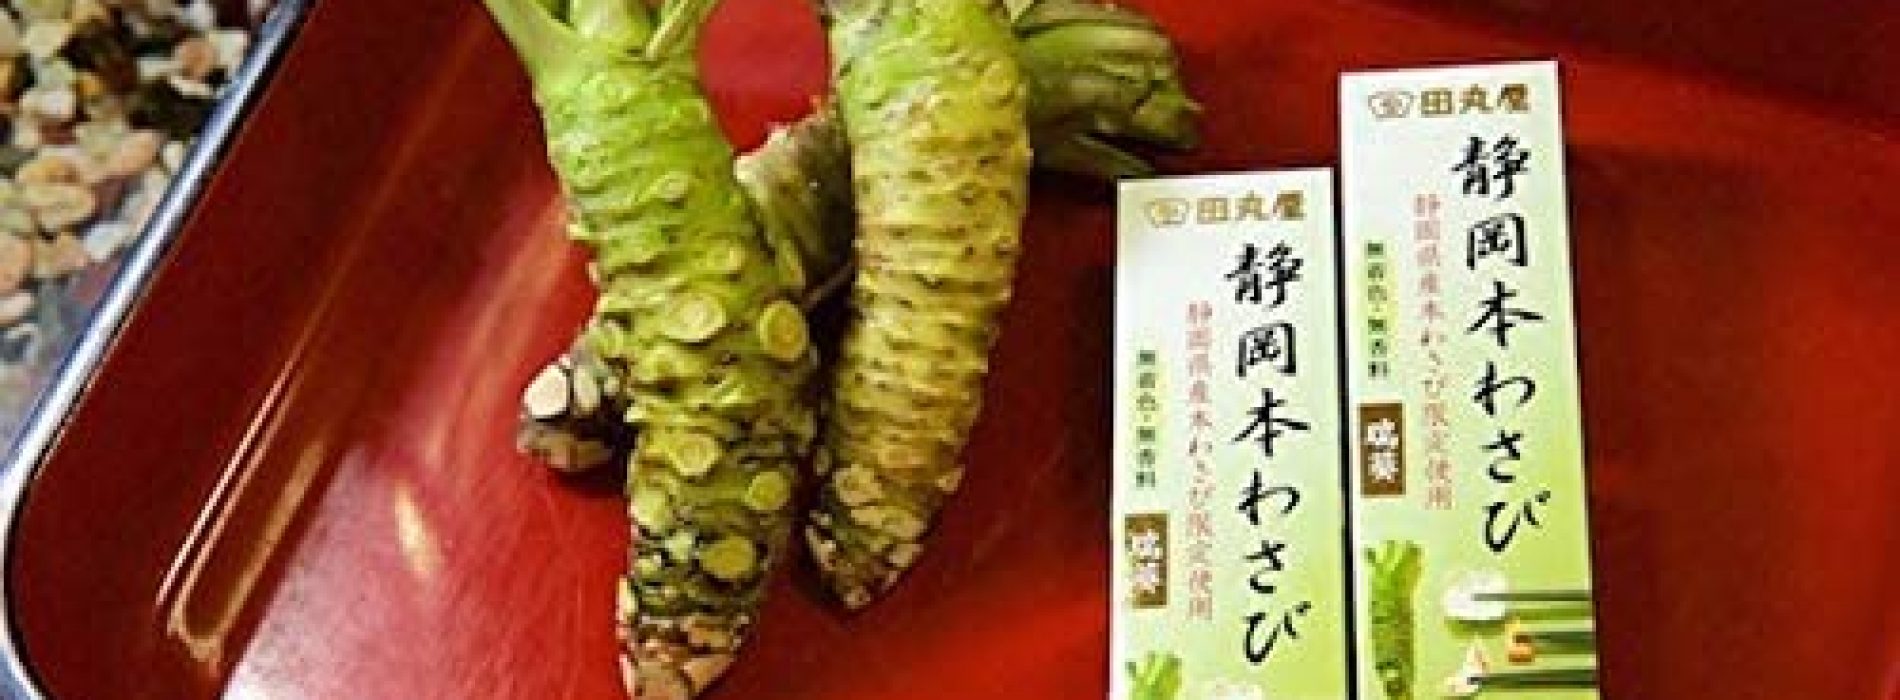 Japanse specerij bestrijdt zeer dodelijke pancreaskanker